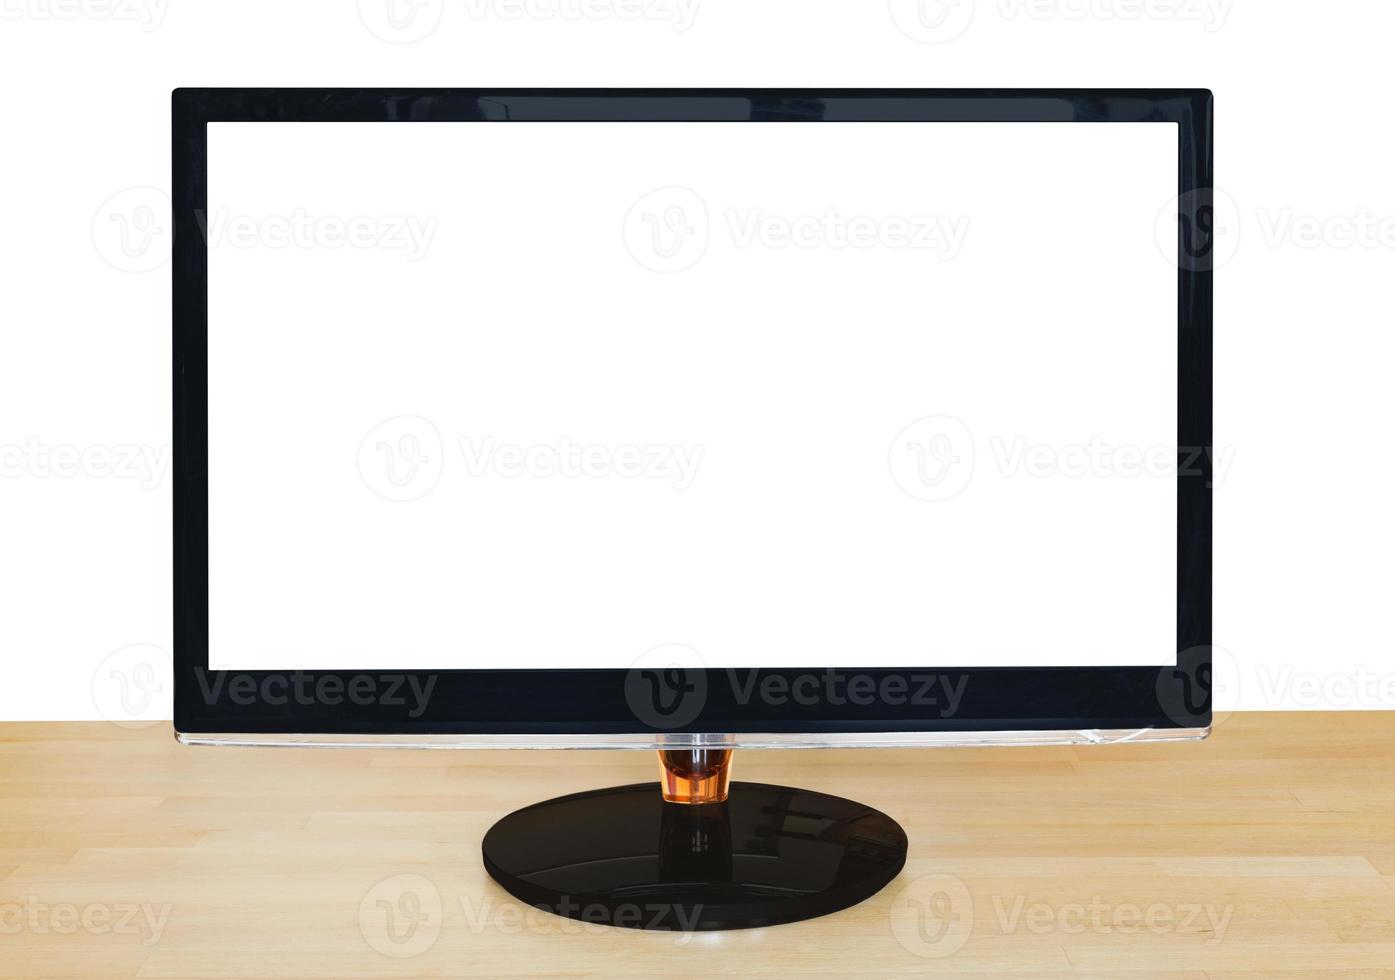 vista frontal da tela widescreen preta do computador foto